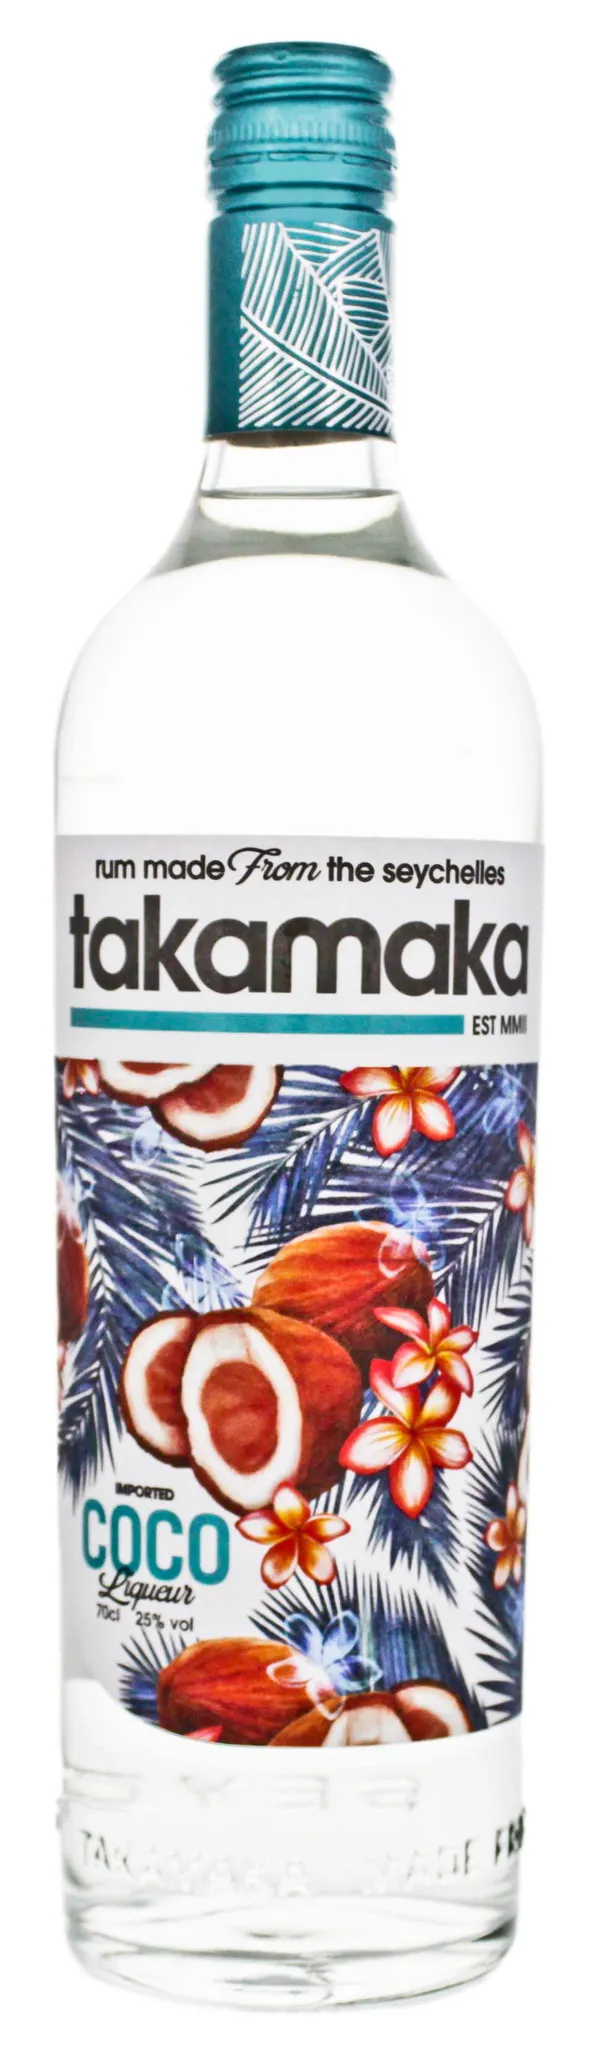 alc. Takamaka Cocos Vol.-%, 0,7l, 25 Likör